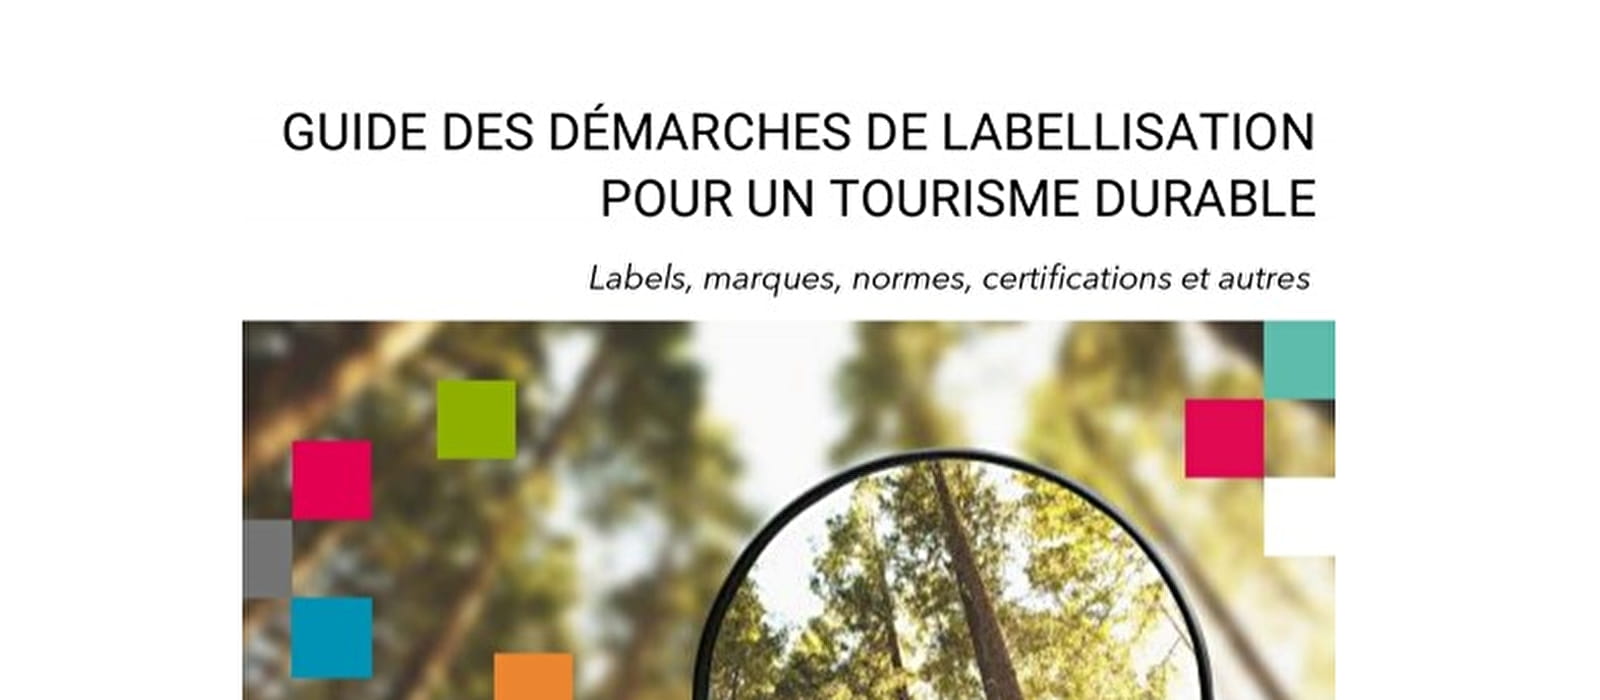 Guide des démarches de labellisation pour un tourisme durable